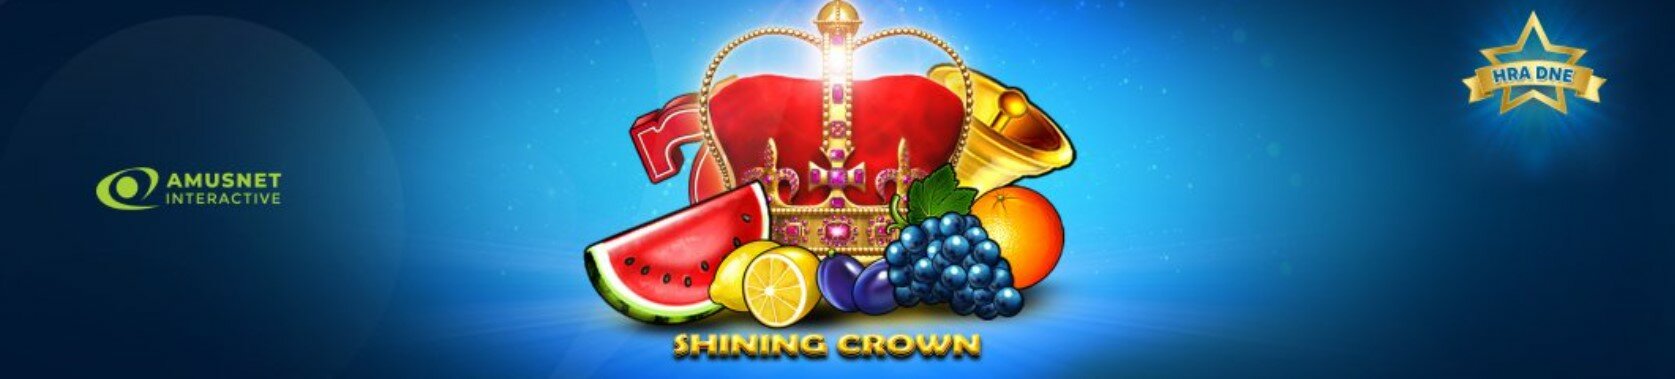 Shining crown merkurxtip